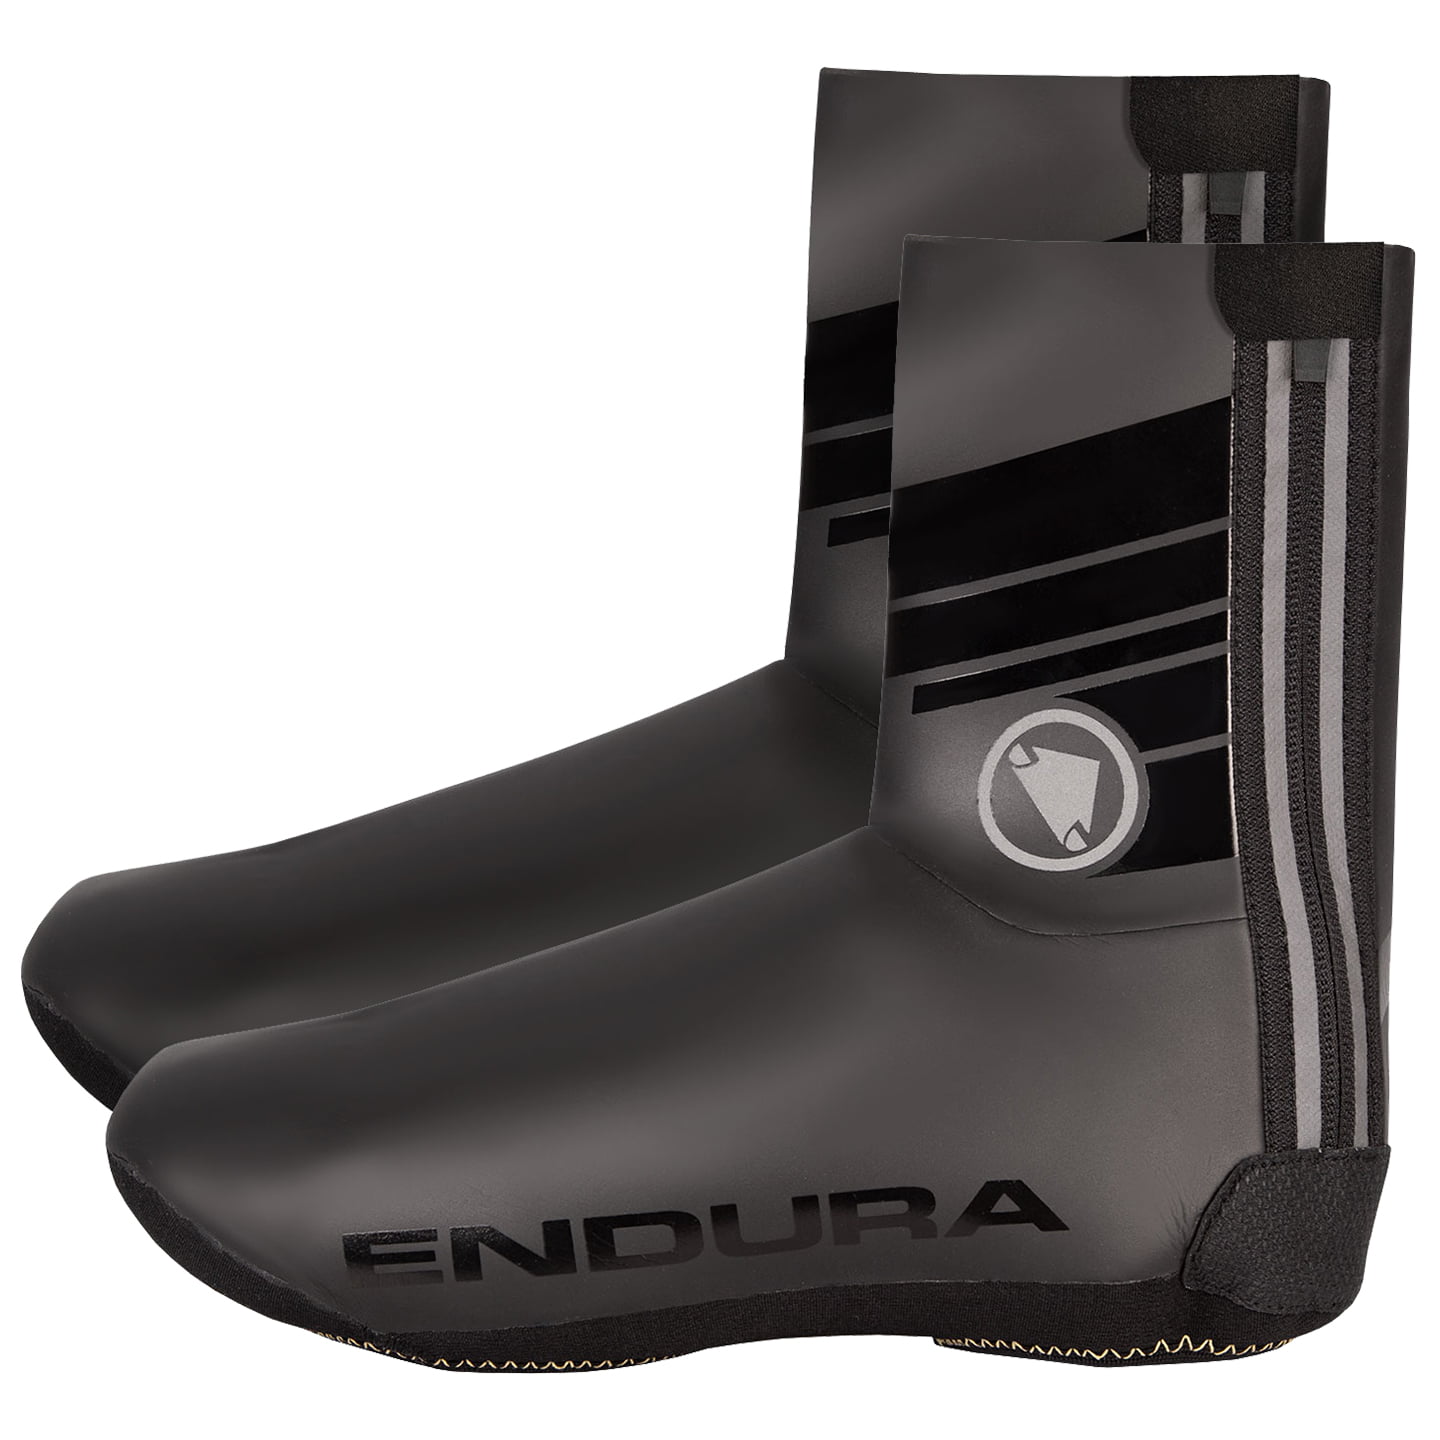 ENDURA Road Bike Rain Shoe Covers Thermal Shoe Covers, Unisex (women / men), size 2XL, Cycling clothing